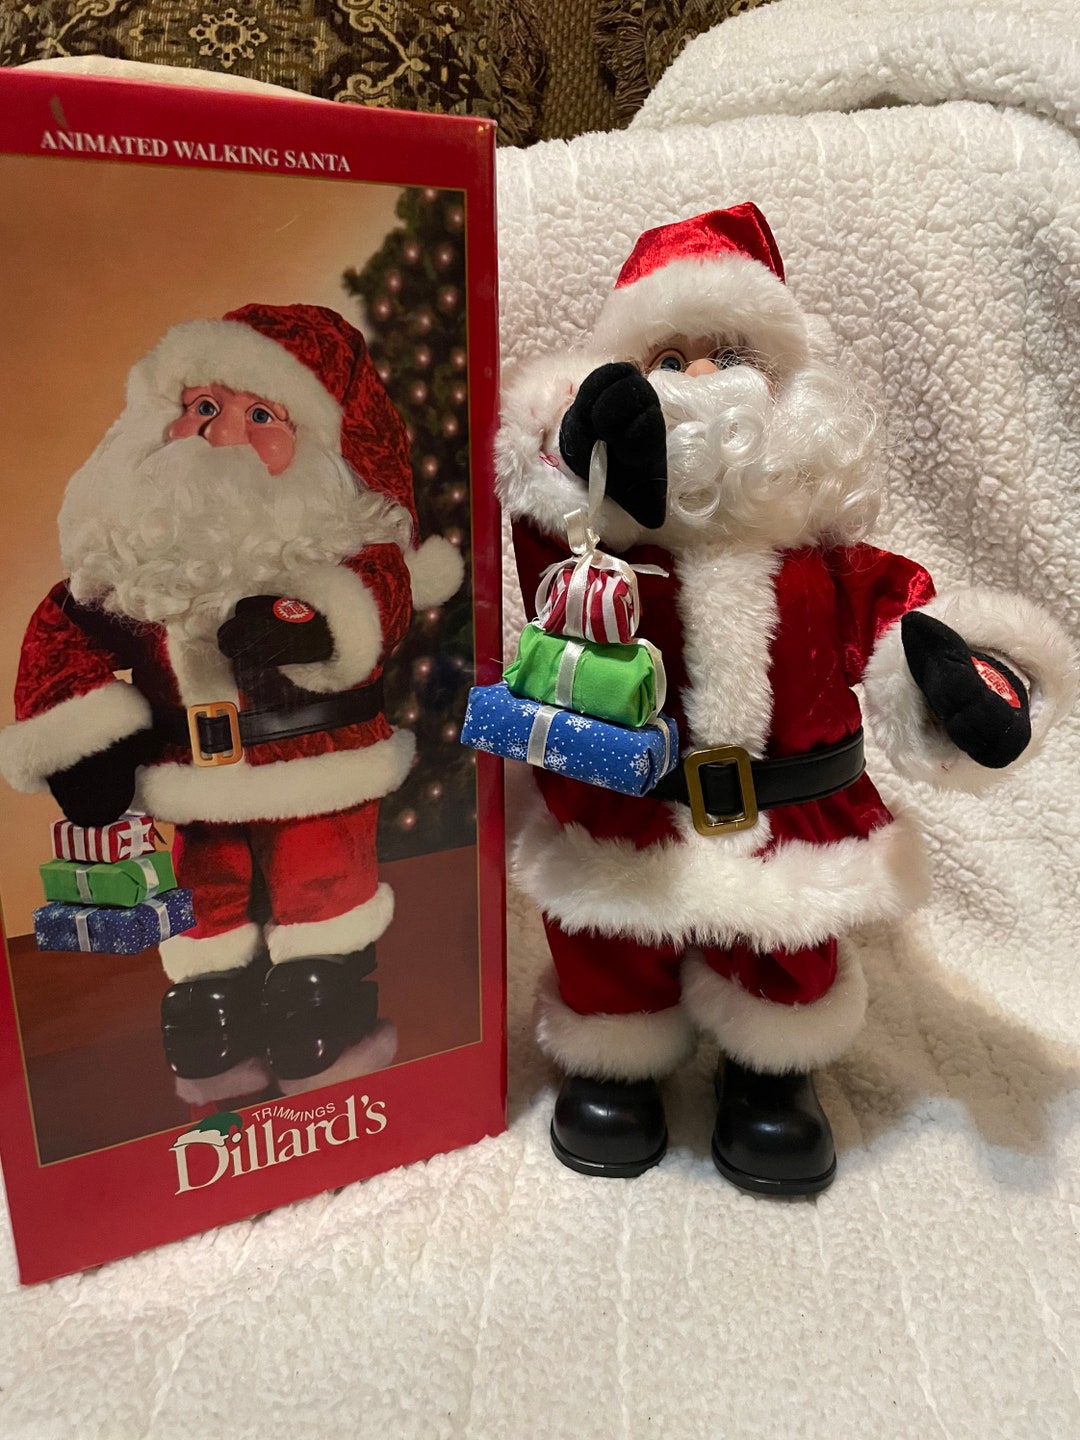 Dillards Trimmings Animated Santa 